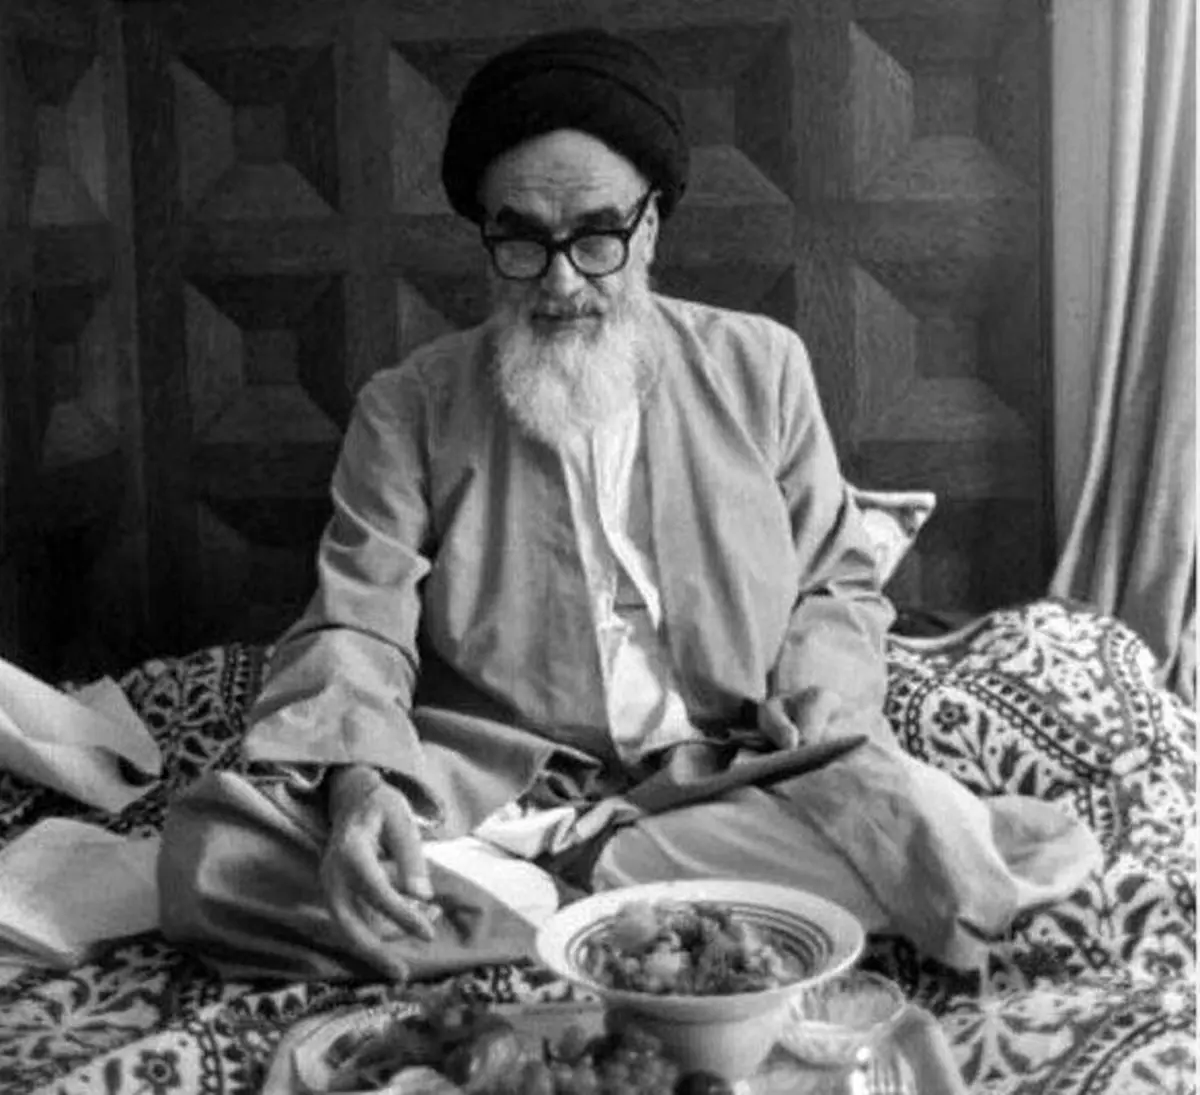 حال روحی و جسمی امام خمینی شب قبل از صدور حکم اعدام سلمان رشدی چطور بود؟